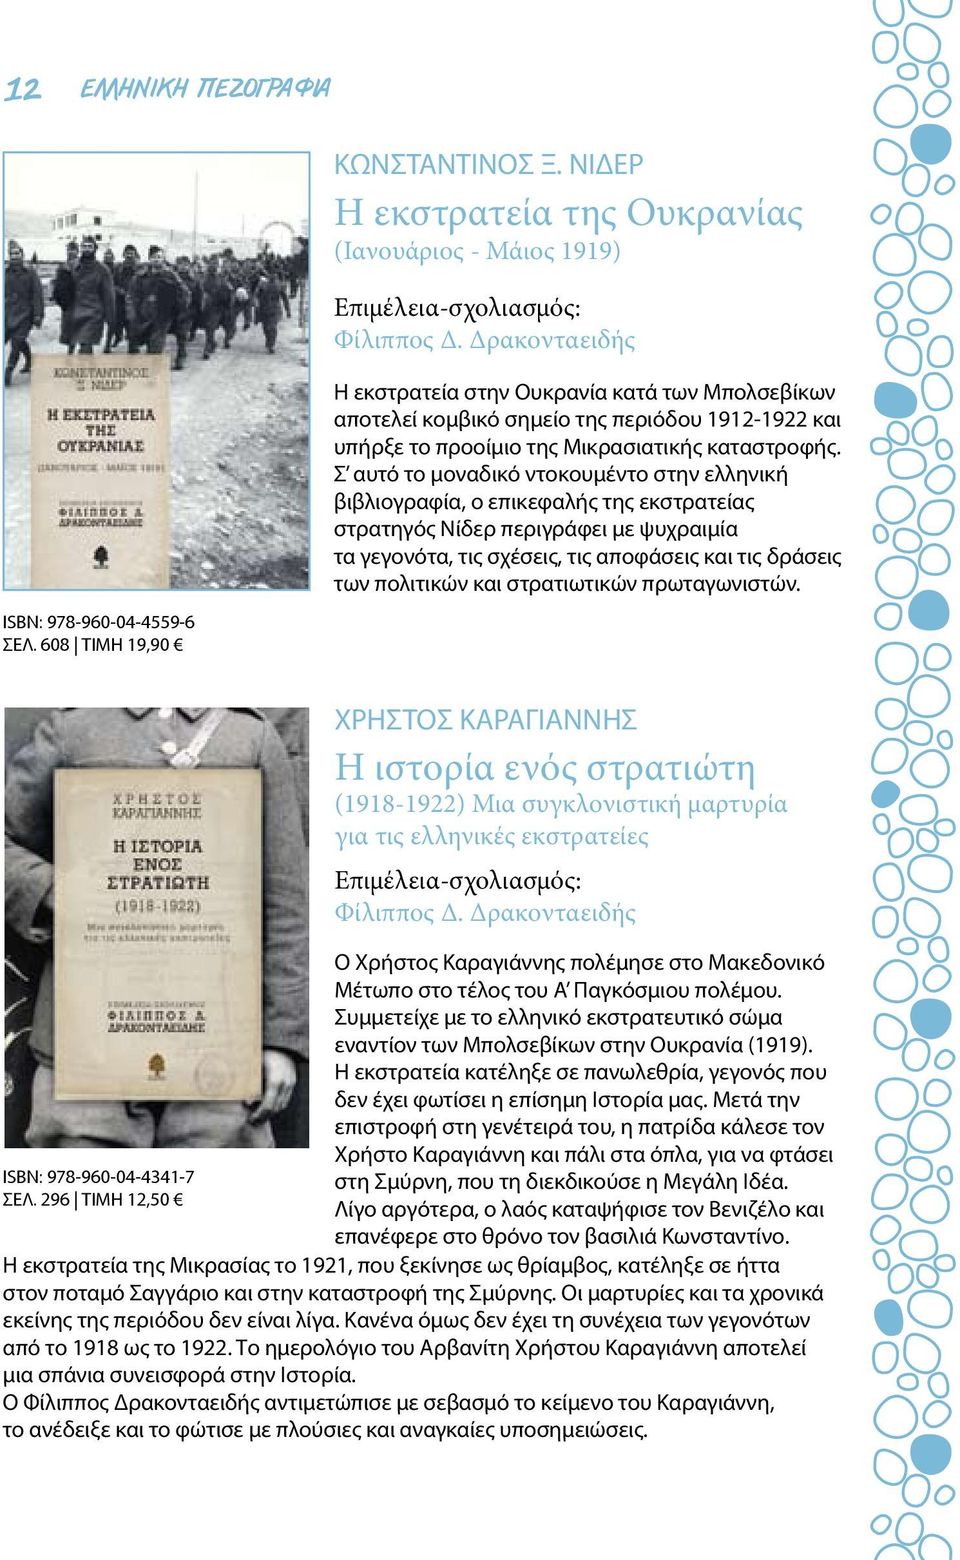 Σ αυτό το μοναδικό ντοκουμέντο στην ελληνική βιβλιογραφία, ο επικεφαλής της εκστρατείας στρατηγός Νίδερ περιγράφει με ψυχραιμία τα γεγονότα, τις σχέσεις, τις αποφάσεις και τις δράσεις των πολιτικών